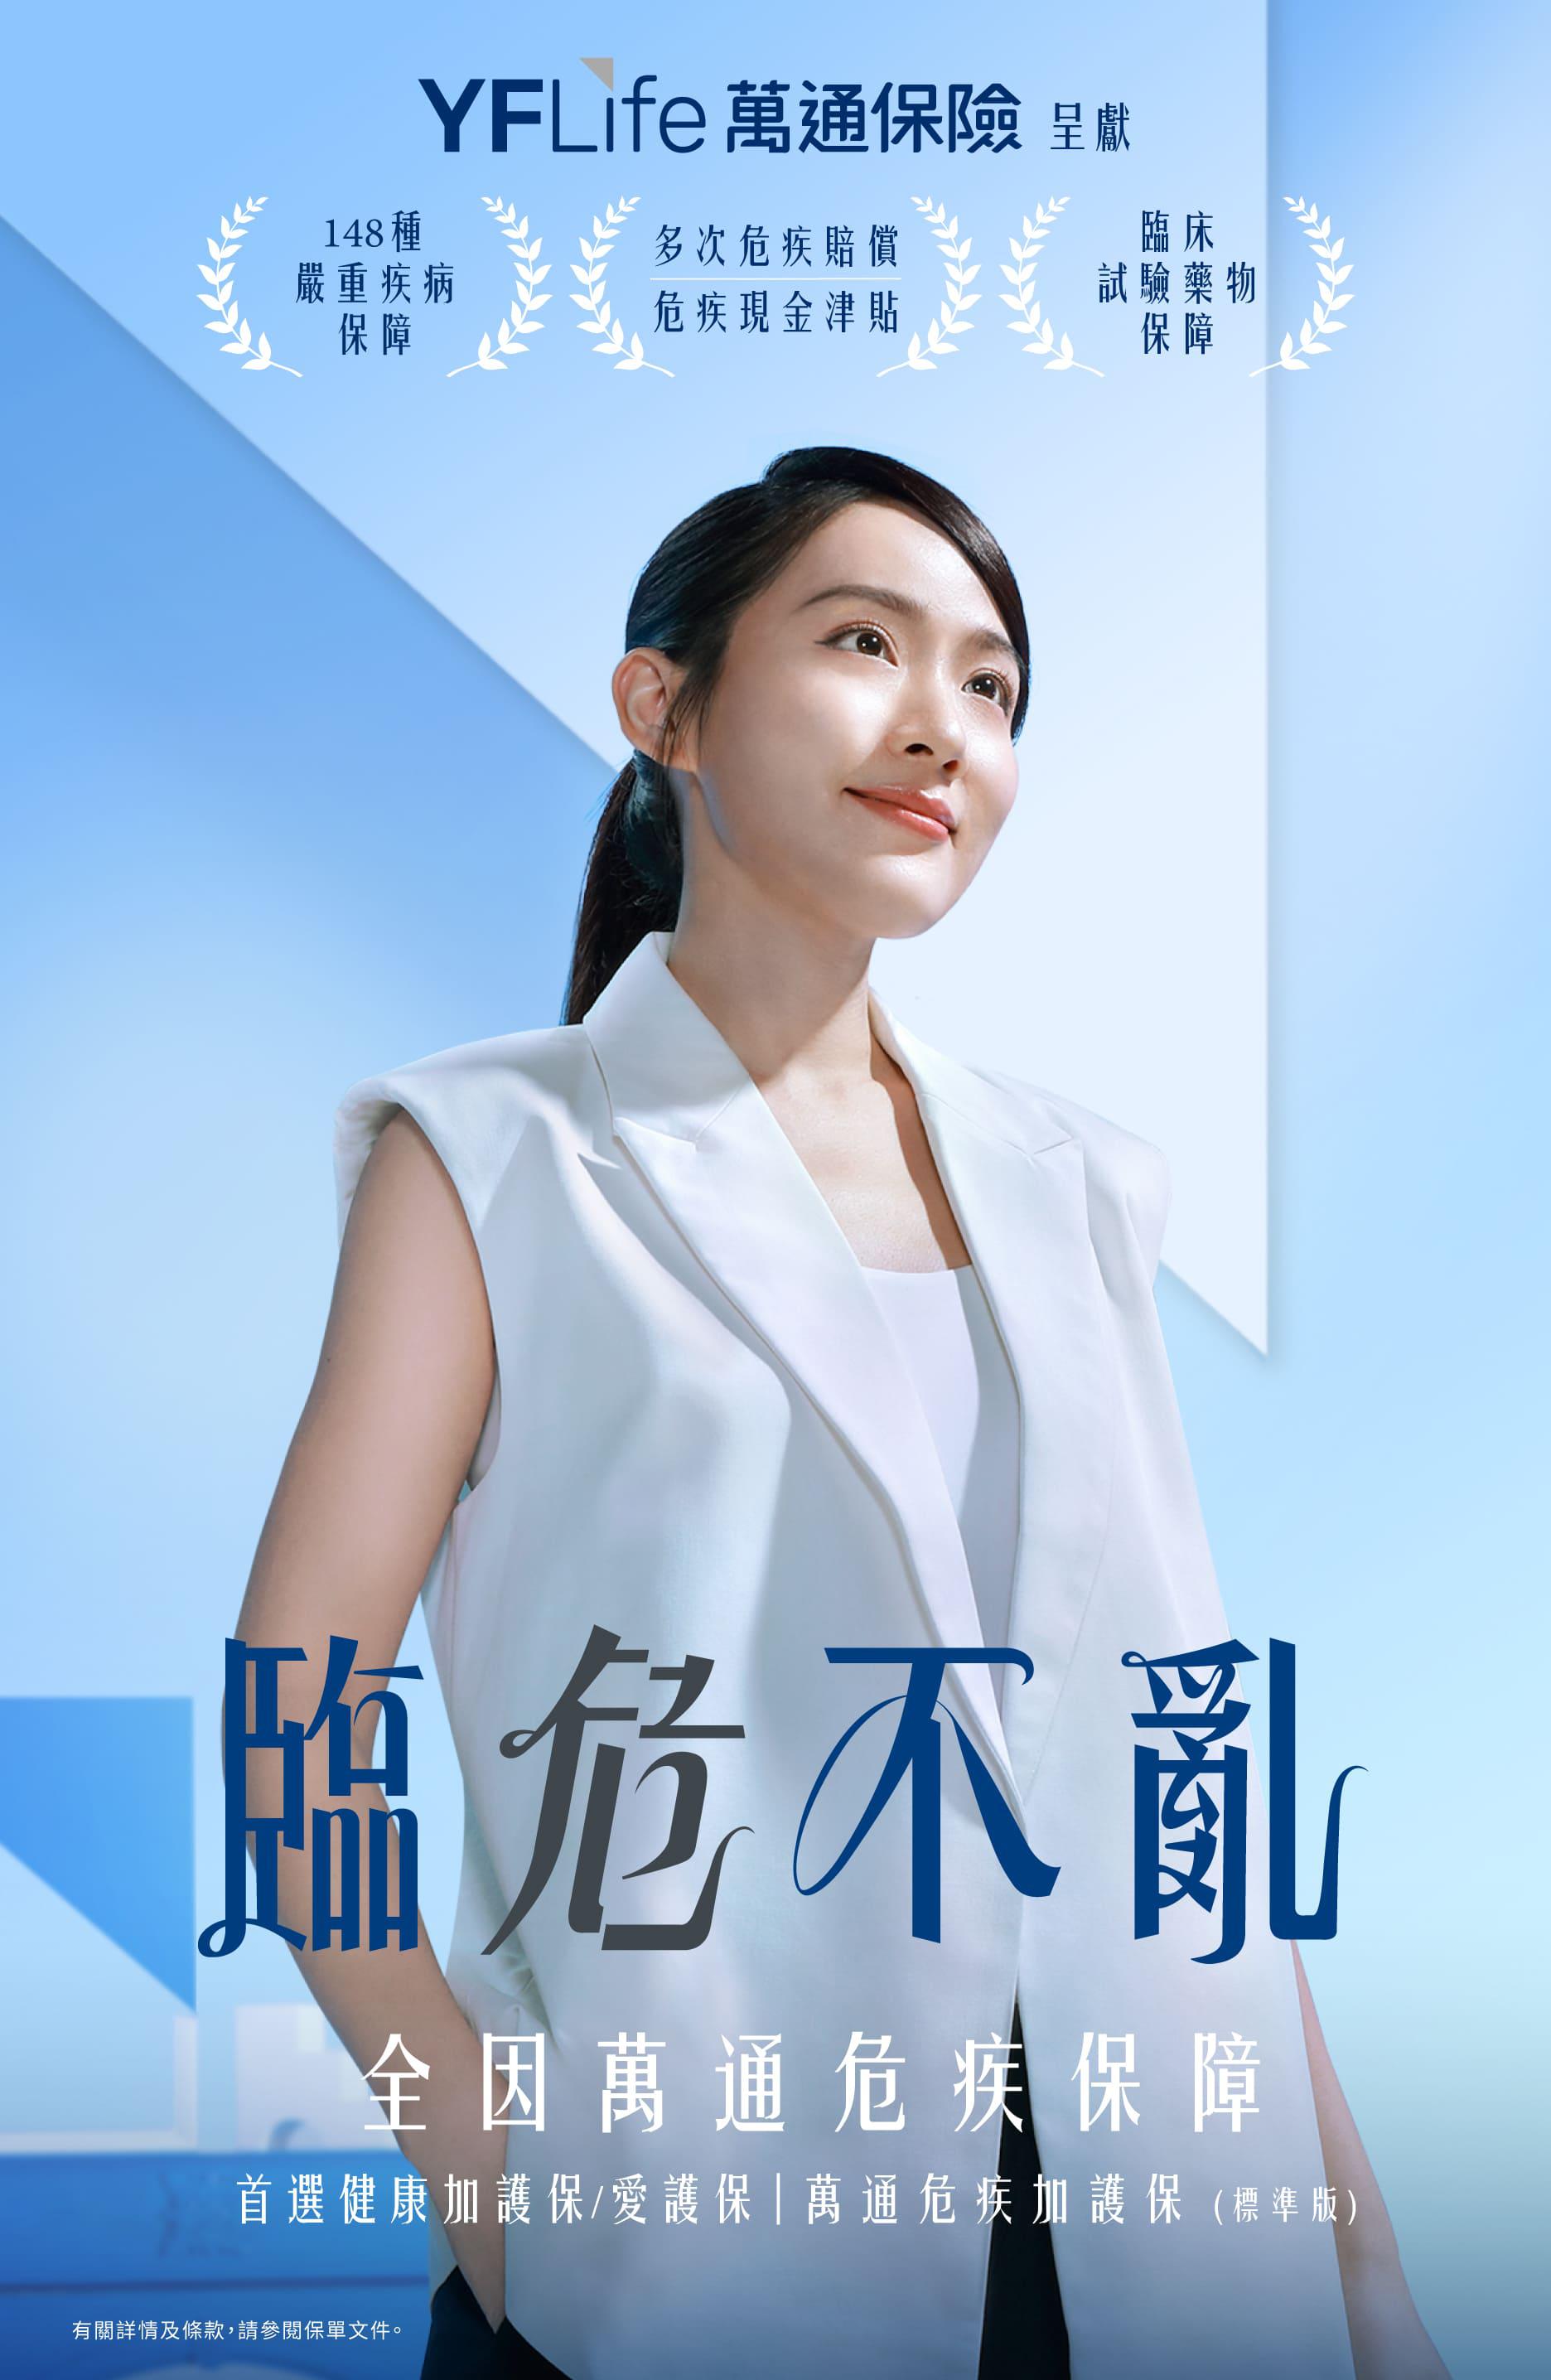 全新的廣告企劃以「臨危不亂」為主題，並由年輕藝人吳海昕Sofiee擔任主角。